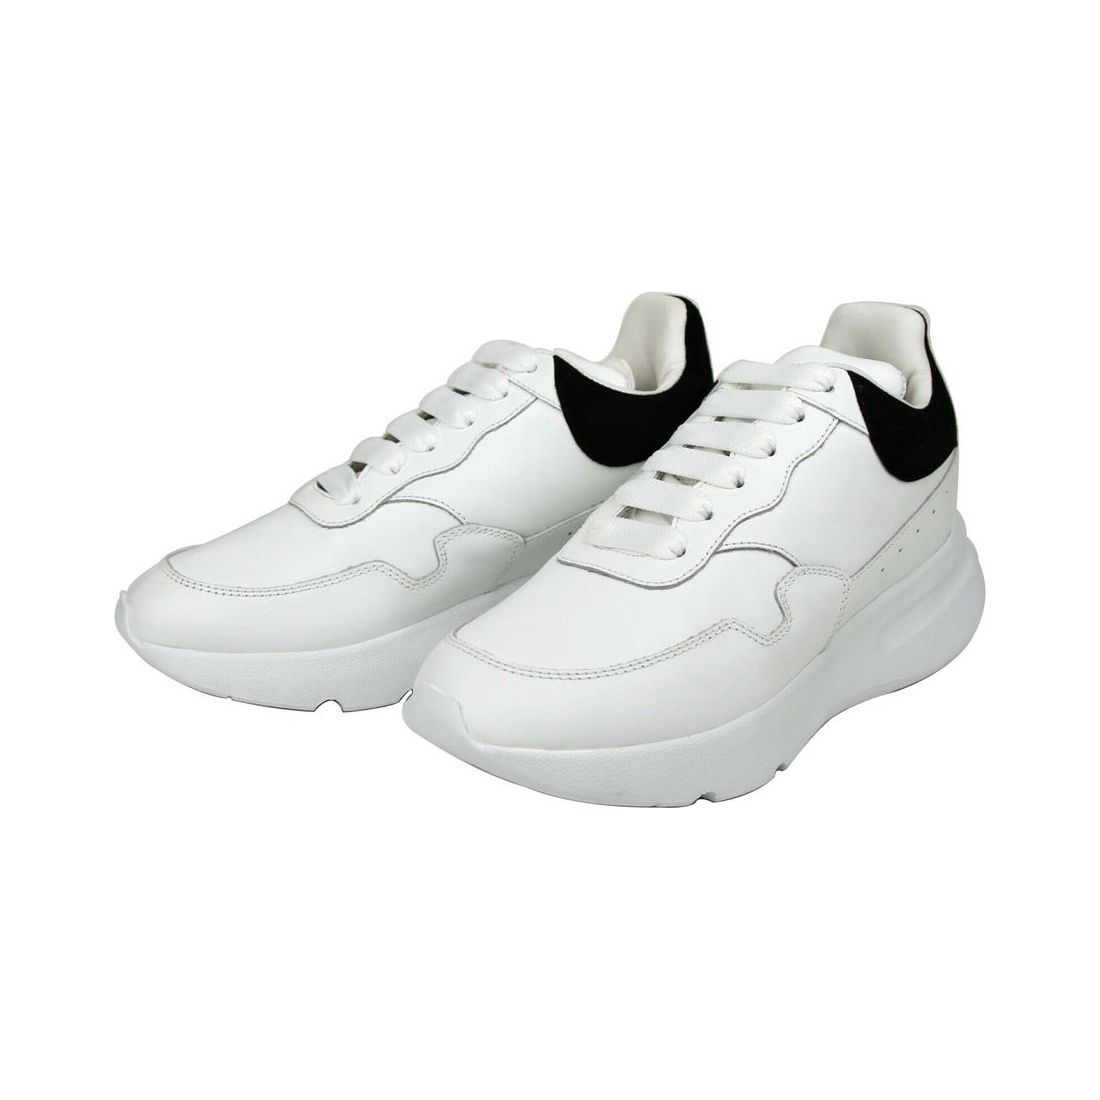 Alexander McQueen Alexander McQueen Women White Leather Suede Sneaker alexander-mcqueen-women-white-leather-suede-sneaker 508291-9061-39__2-59c02149-7d1.jpg